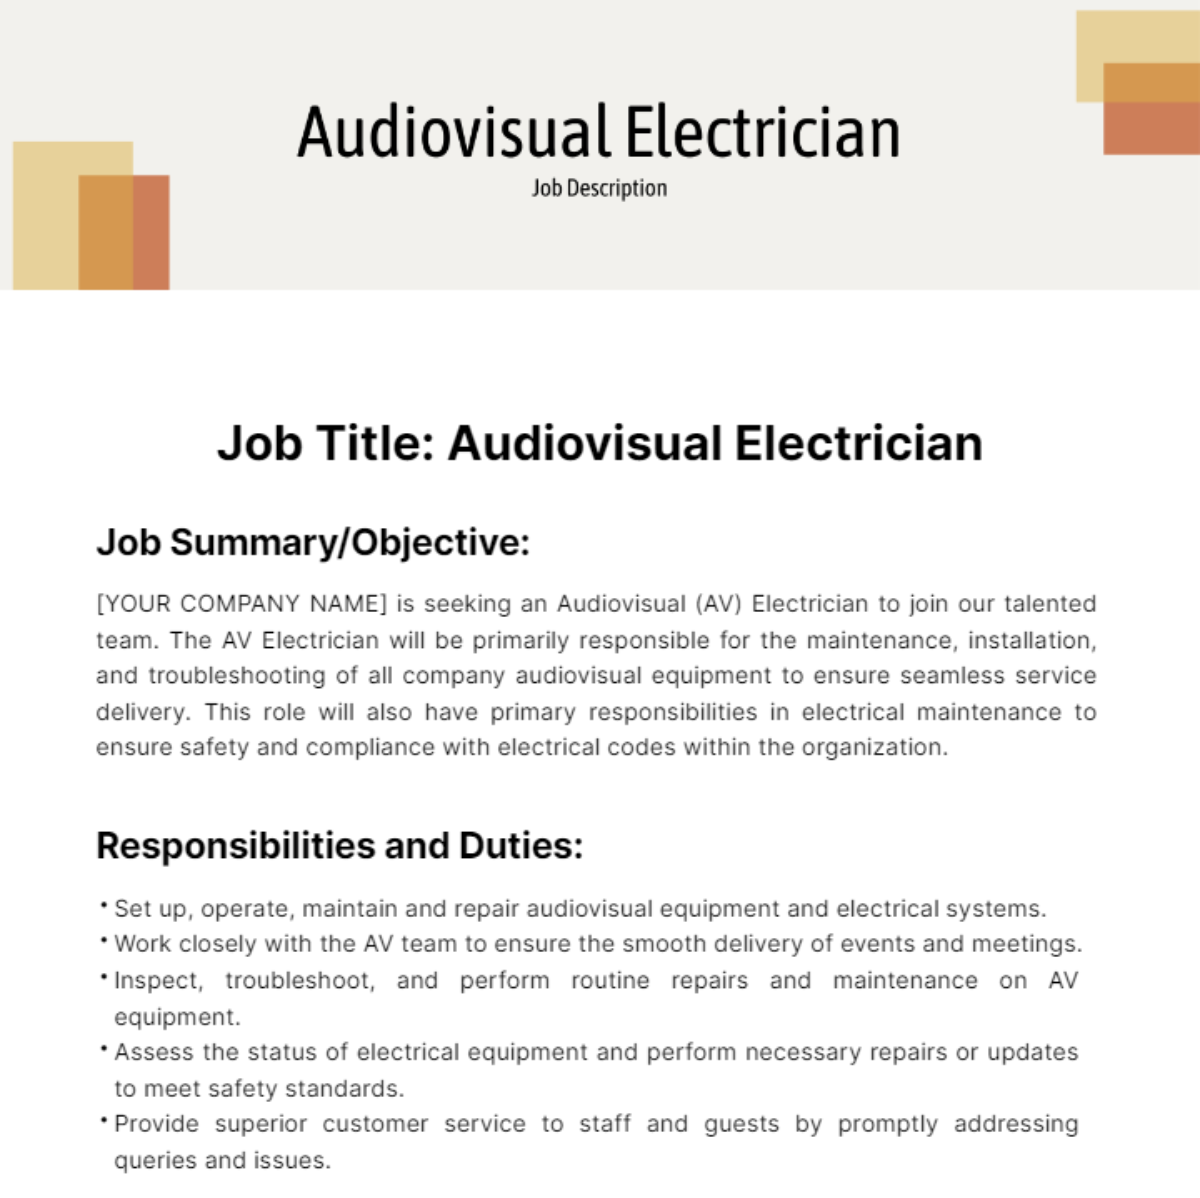 Audiovisual Electrician Job Description Template